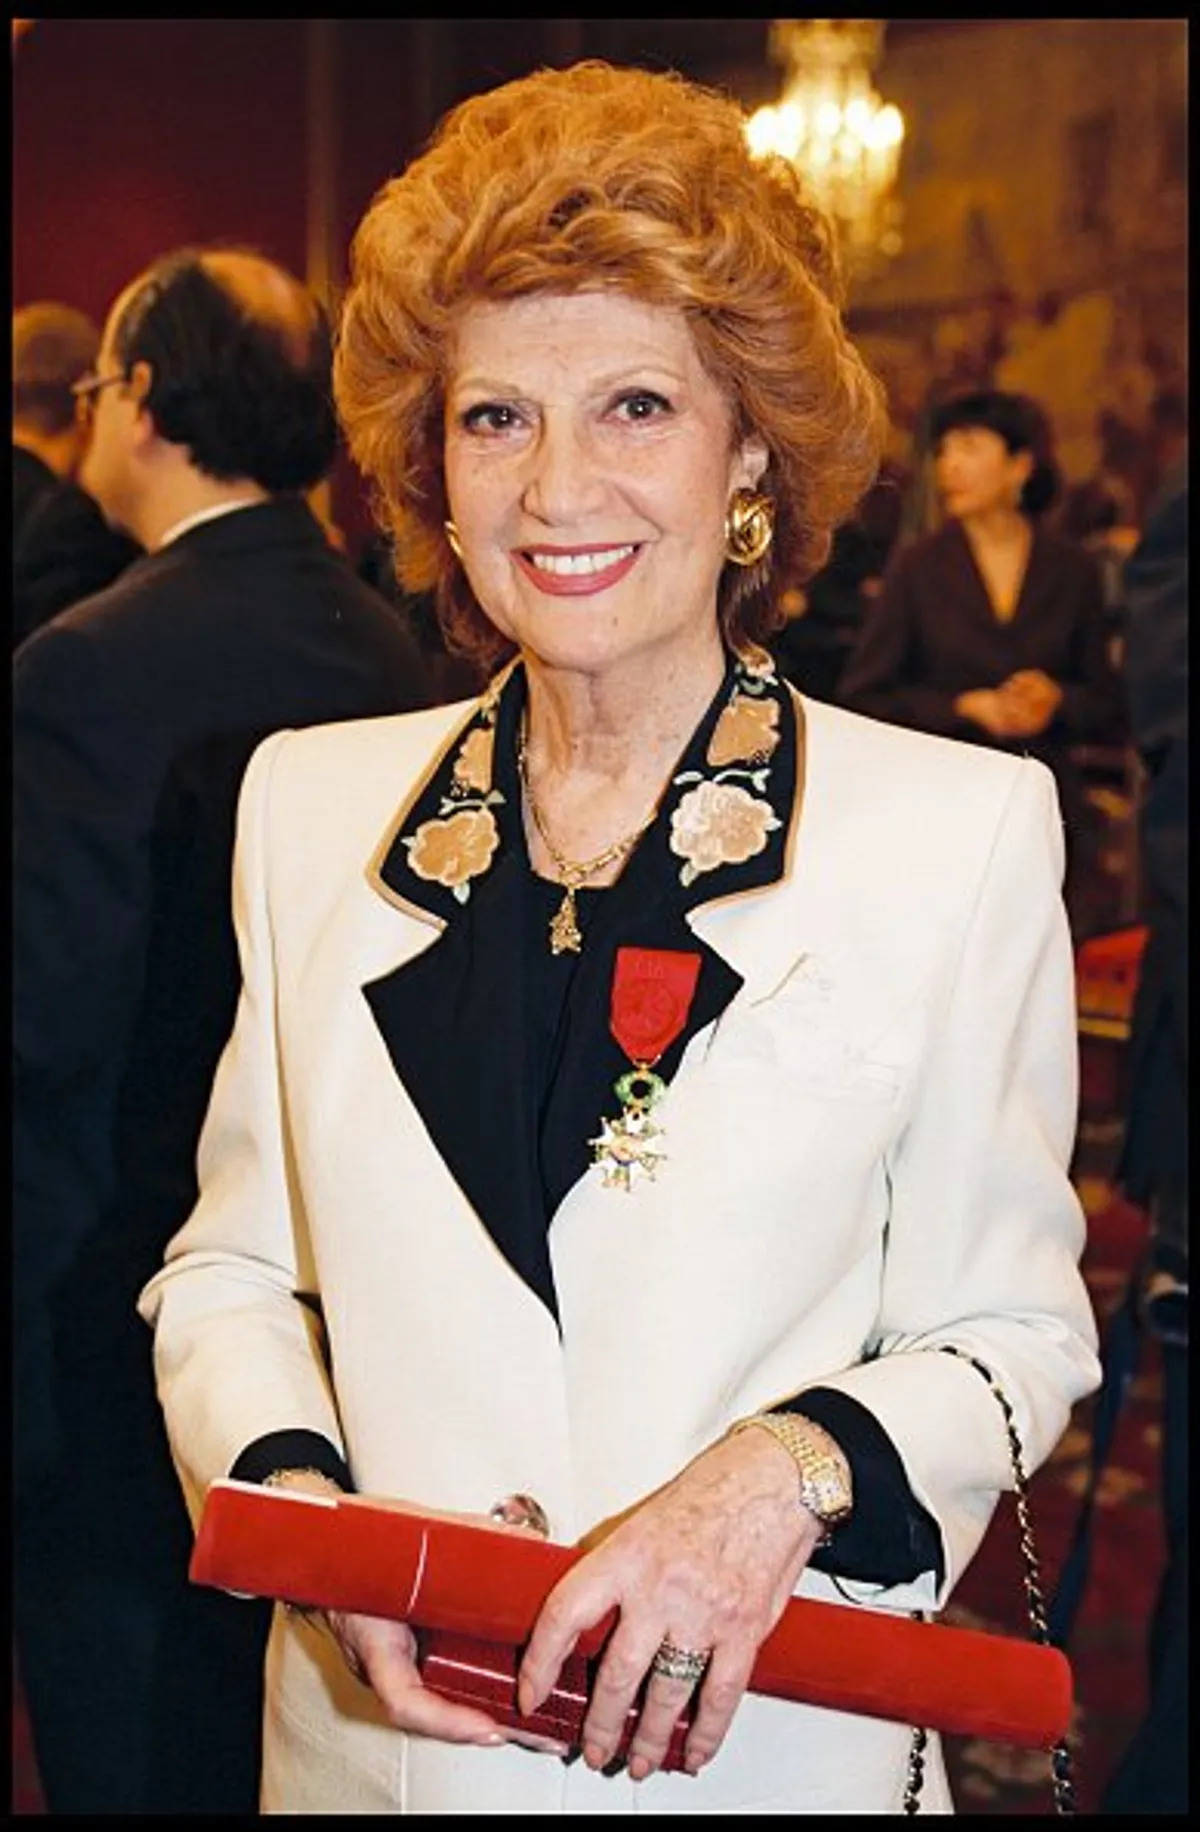 Rosy Varte lors de la cérémonie de remise de l'insigne de Chevalier de la Légion d'Honneur à l'Elysée à Paris en 1998. | Photo : Getty Images